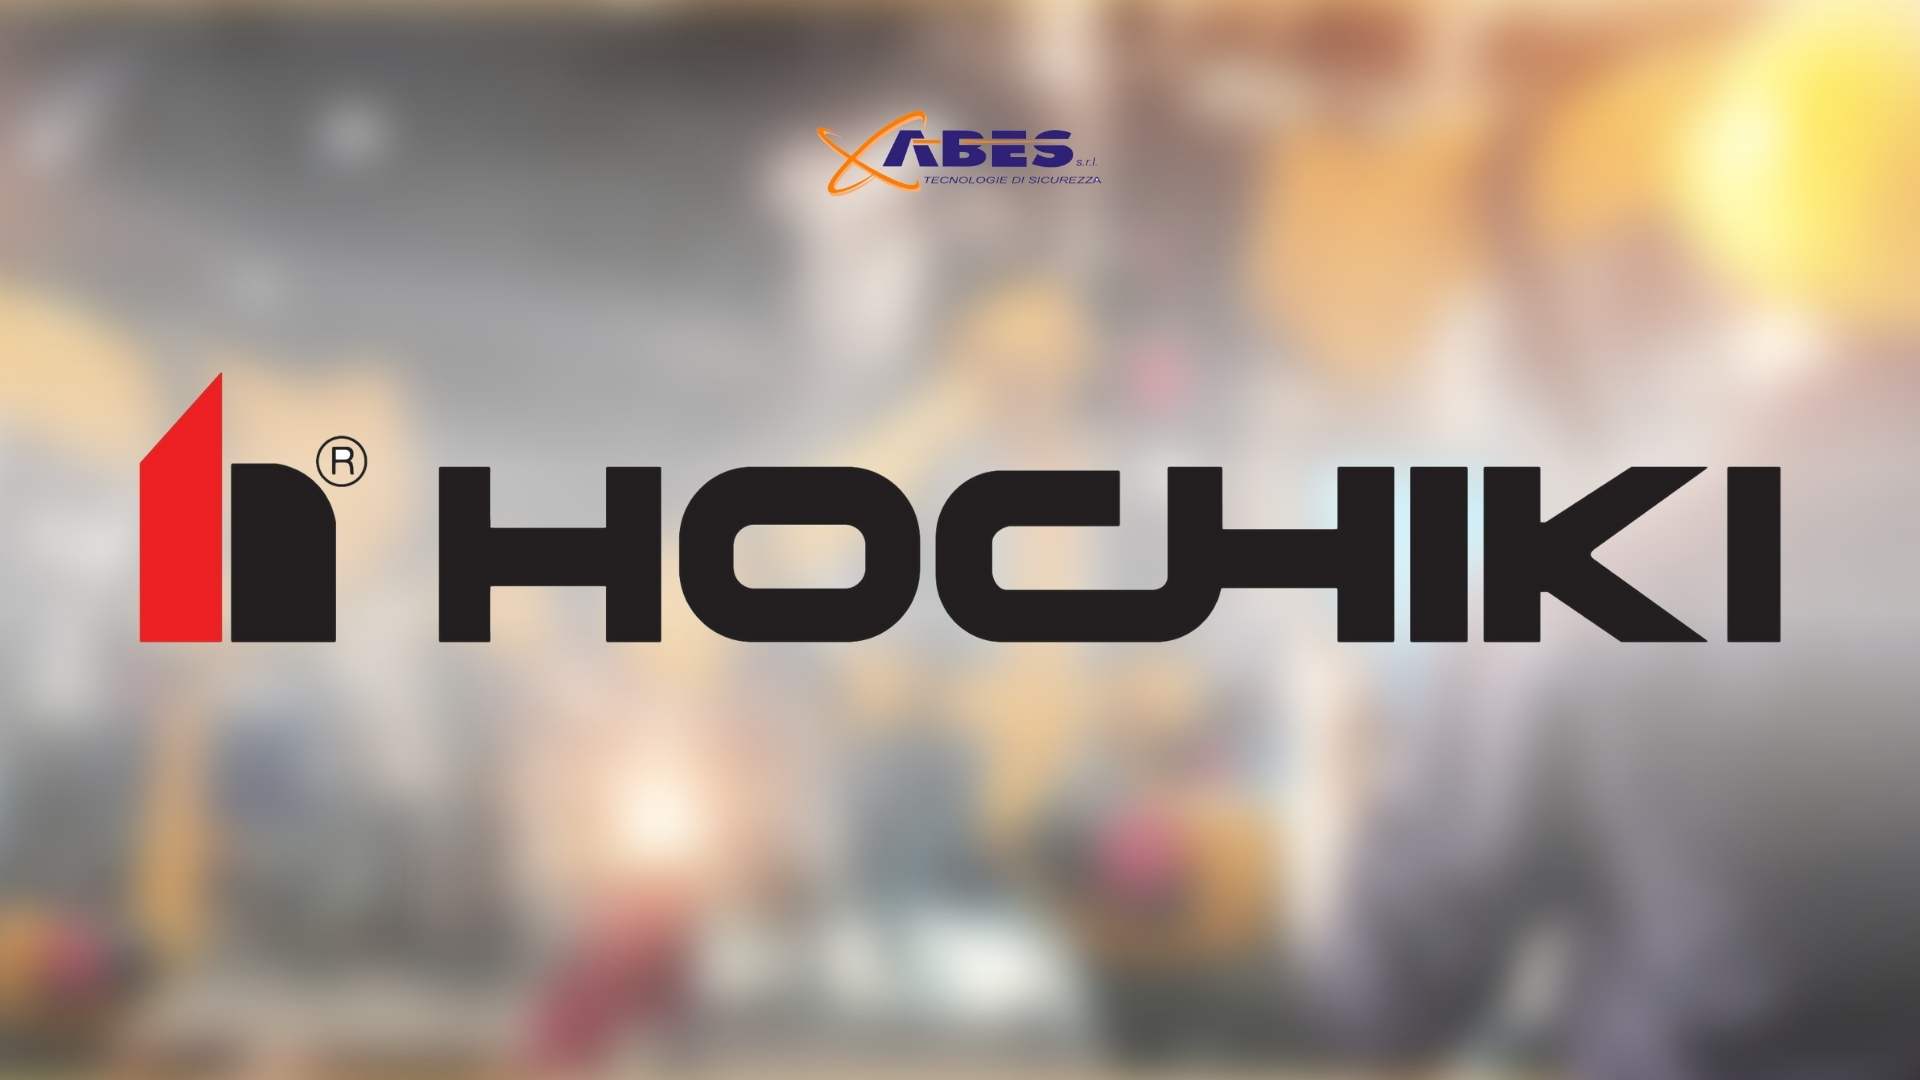 Hochiki - ABES